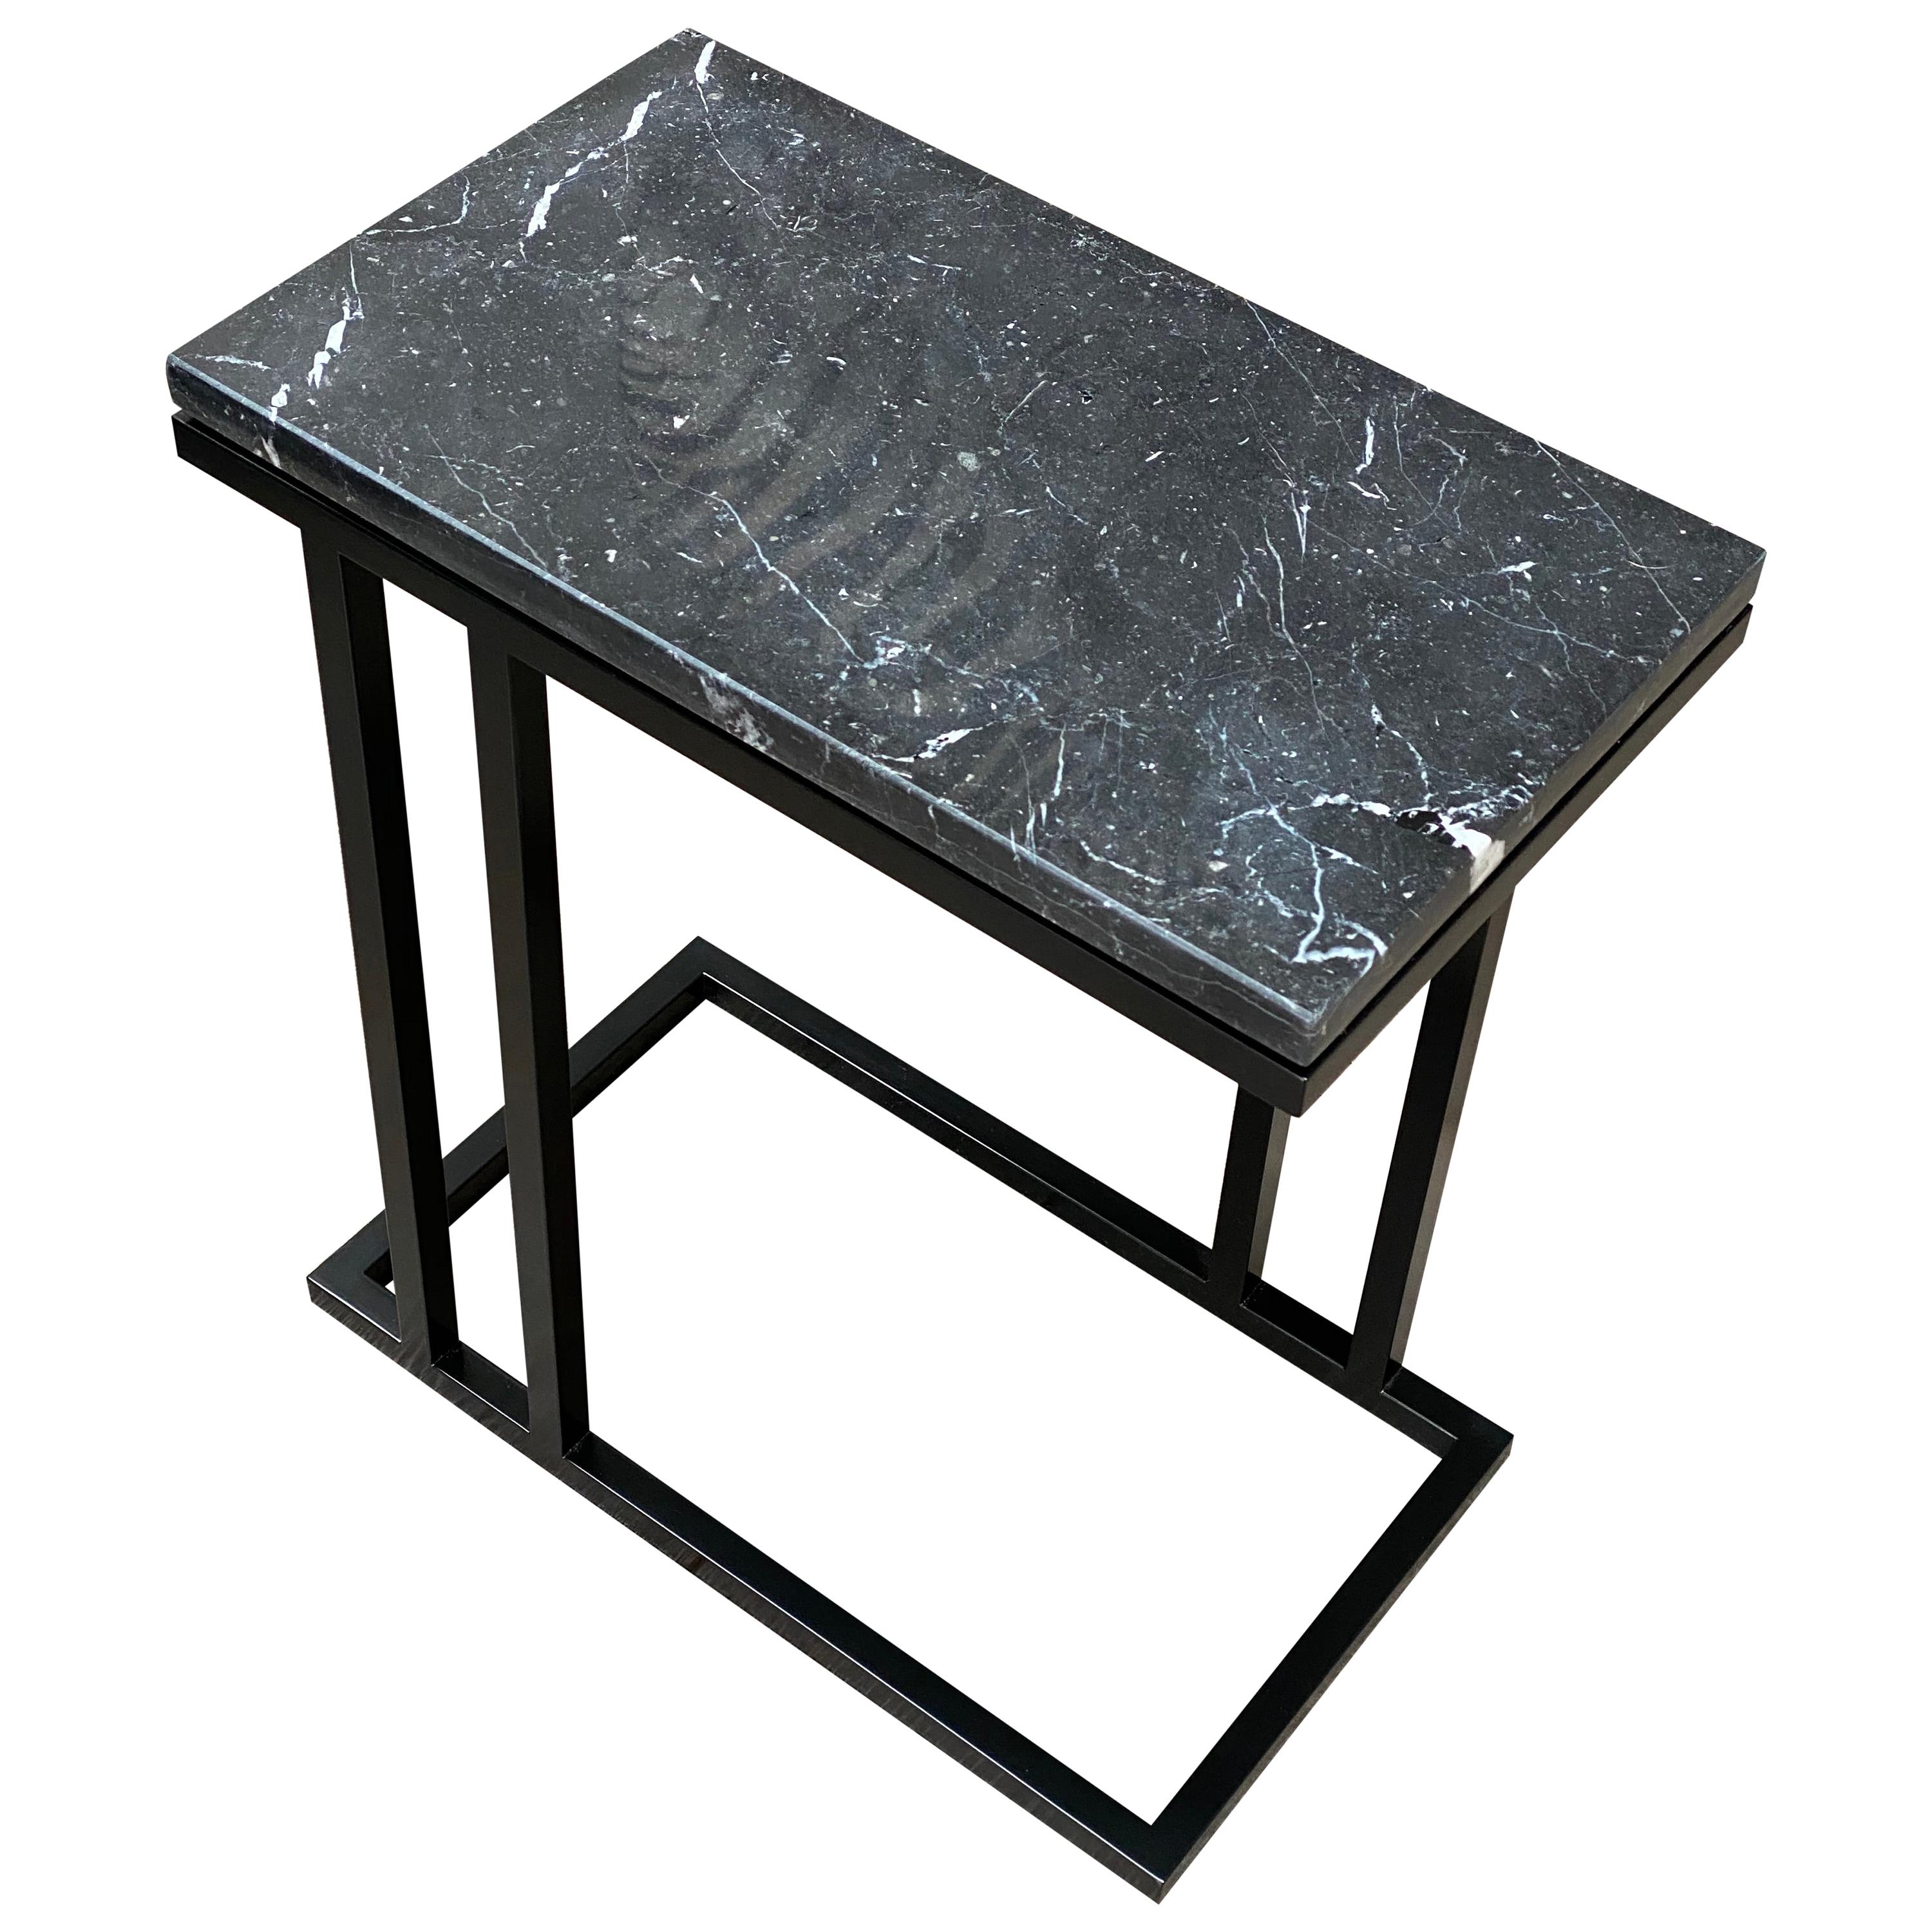 Table d'appoint mince Elio II d'inspiration Art Déco en revêtement en poudre noire et marbre